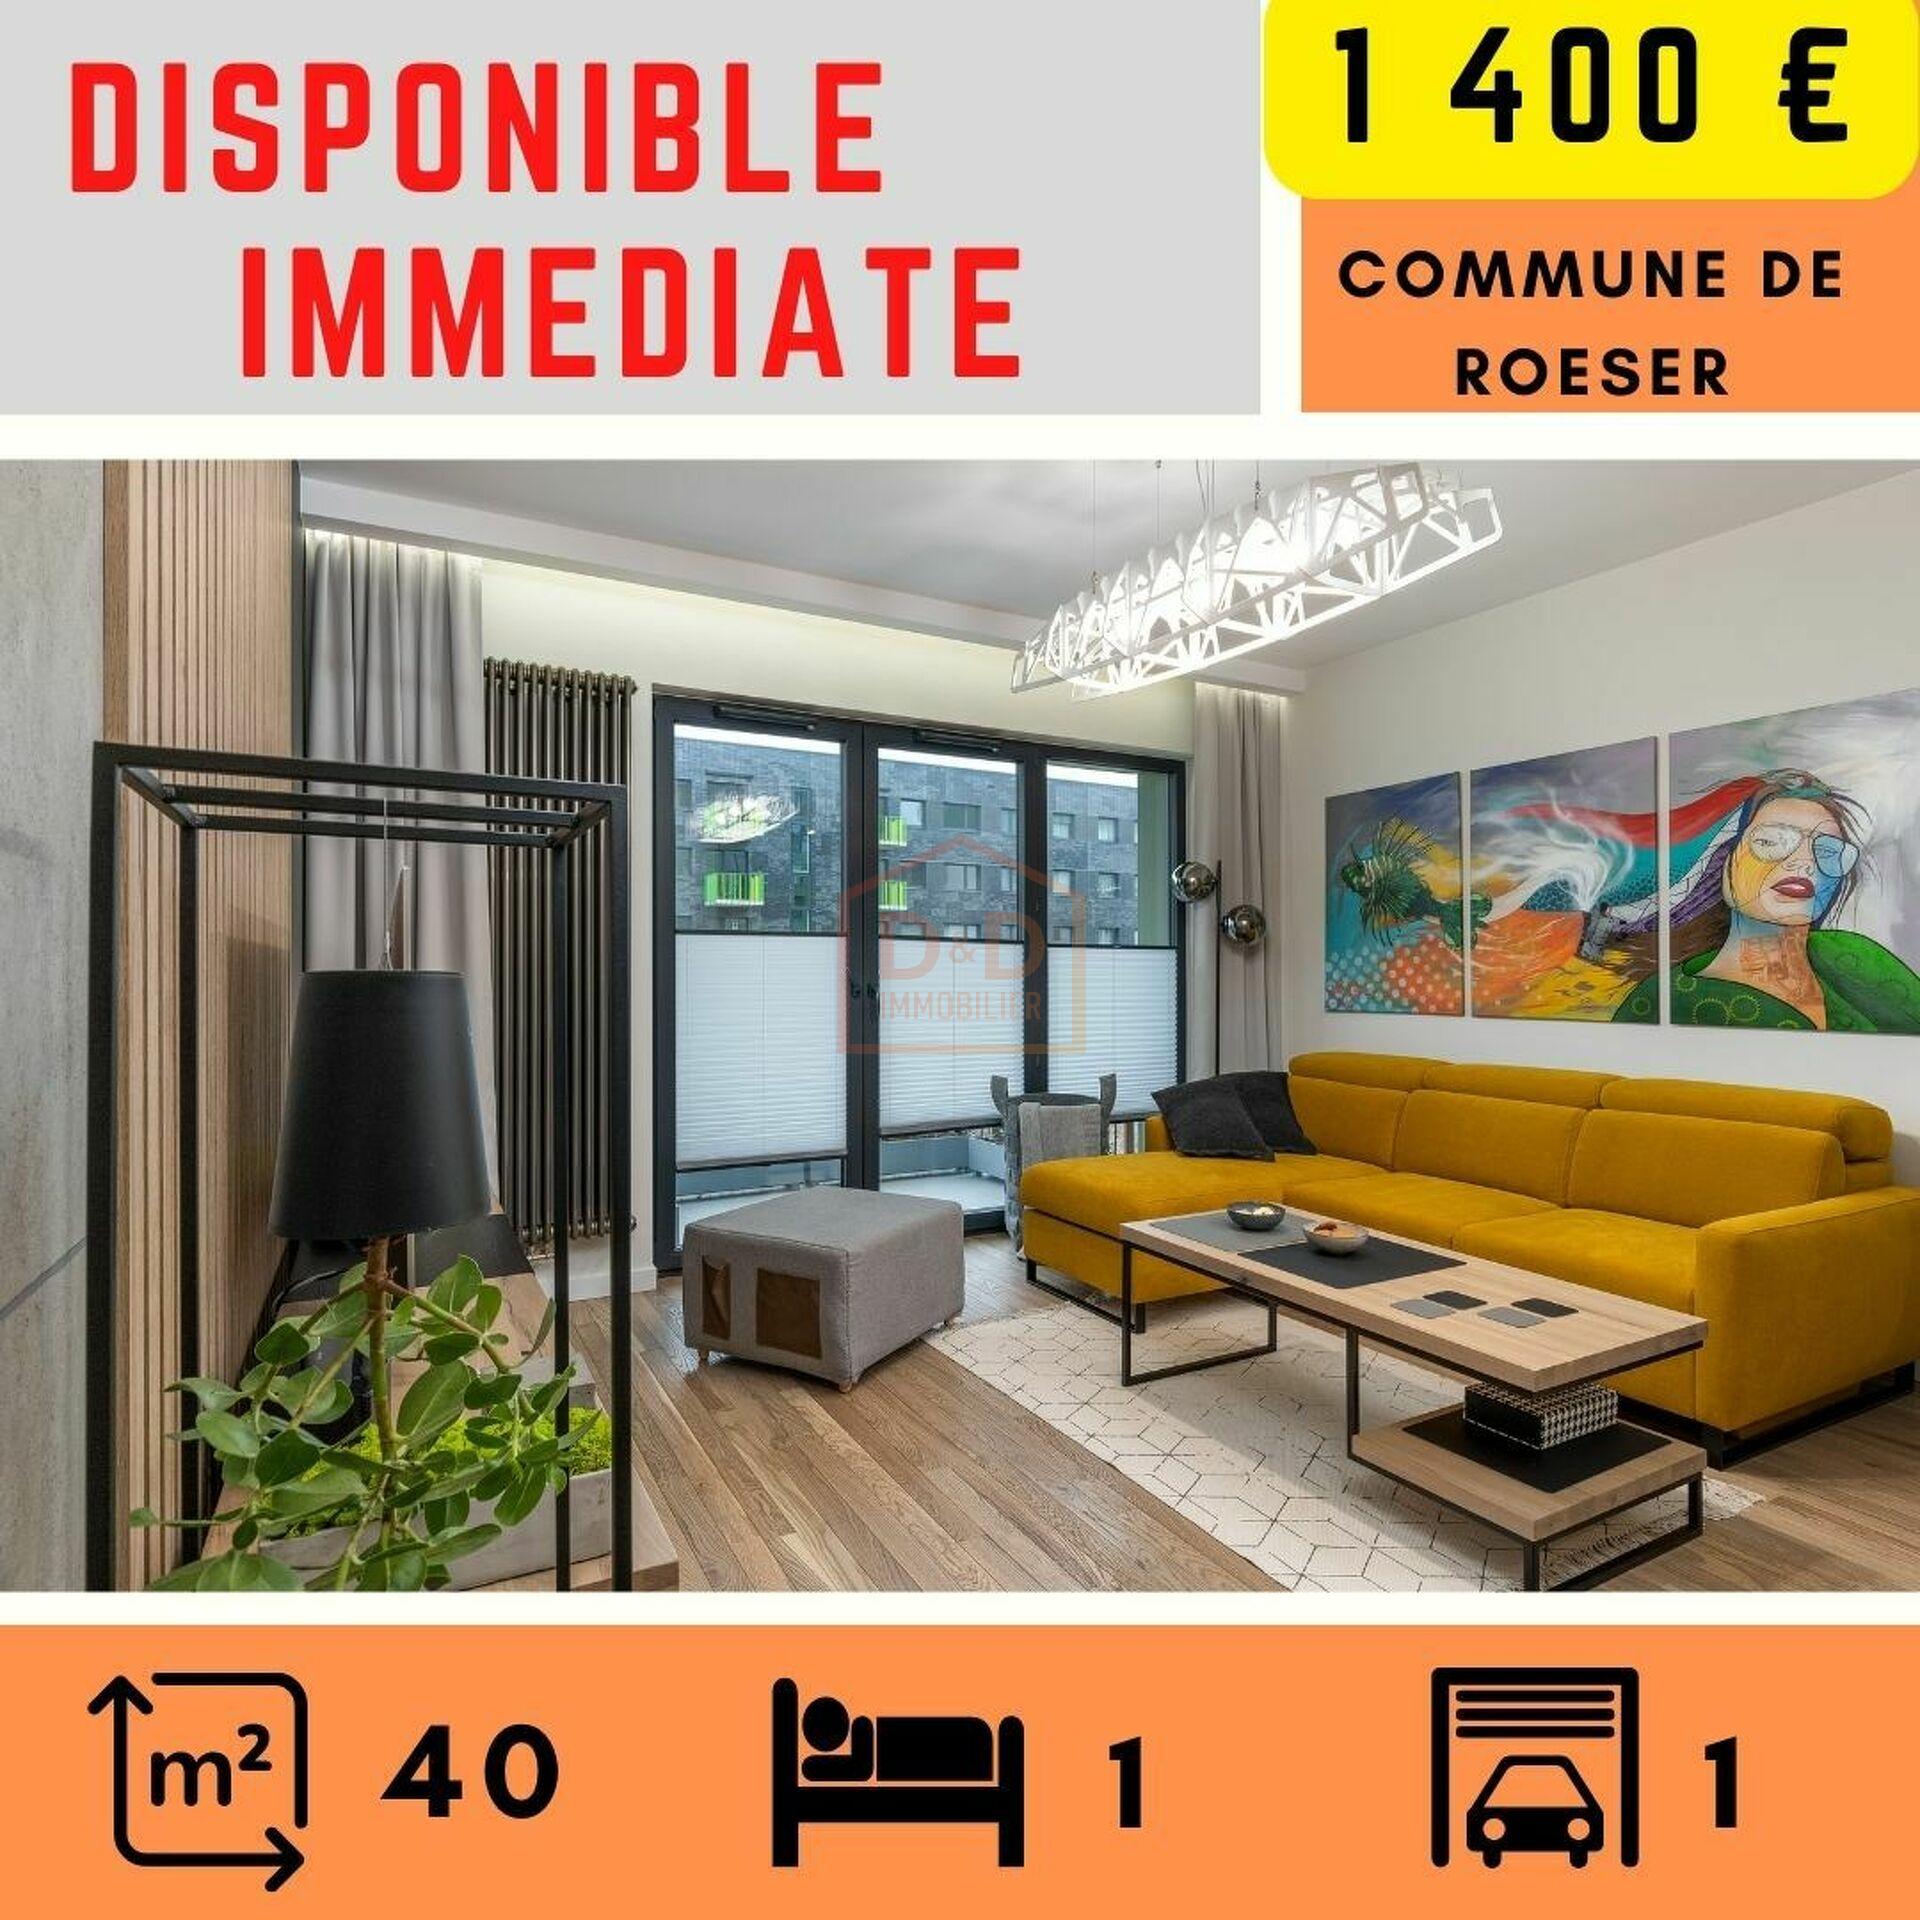 Appartement à Roeser, 40 m², 1 chambre, 1 salle de bain, 1 400 €/mois